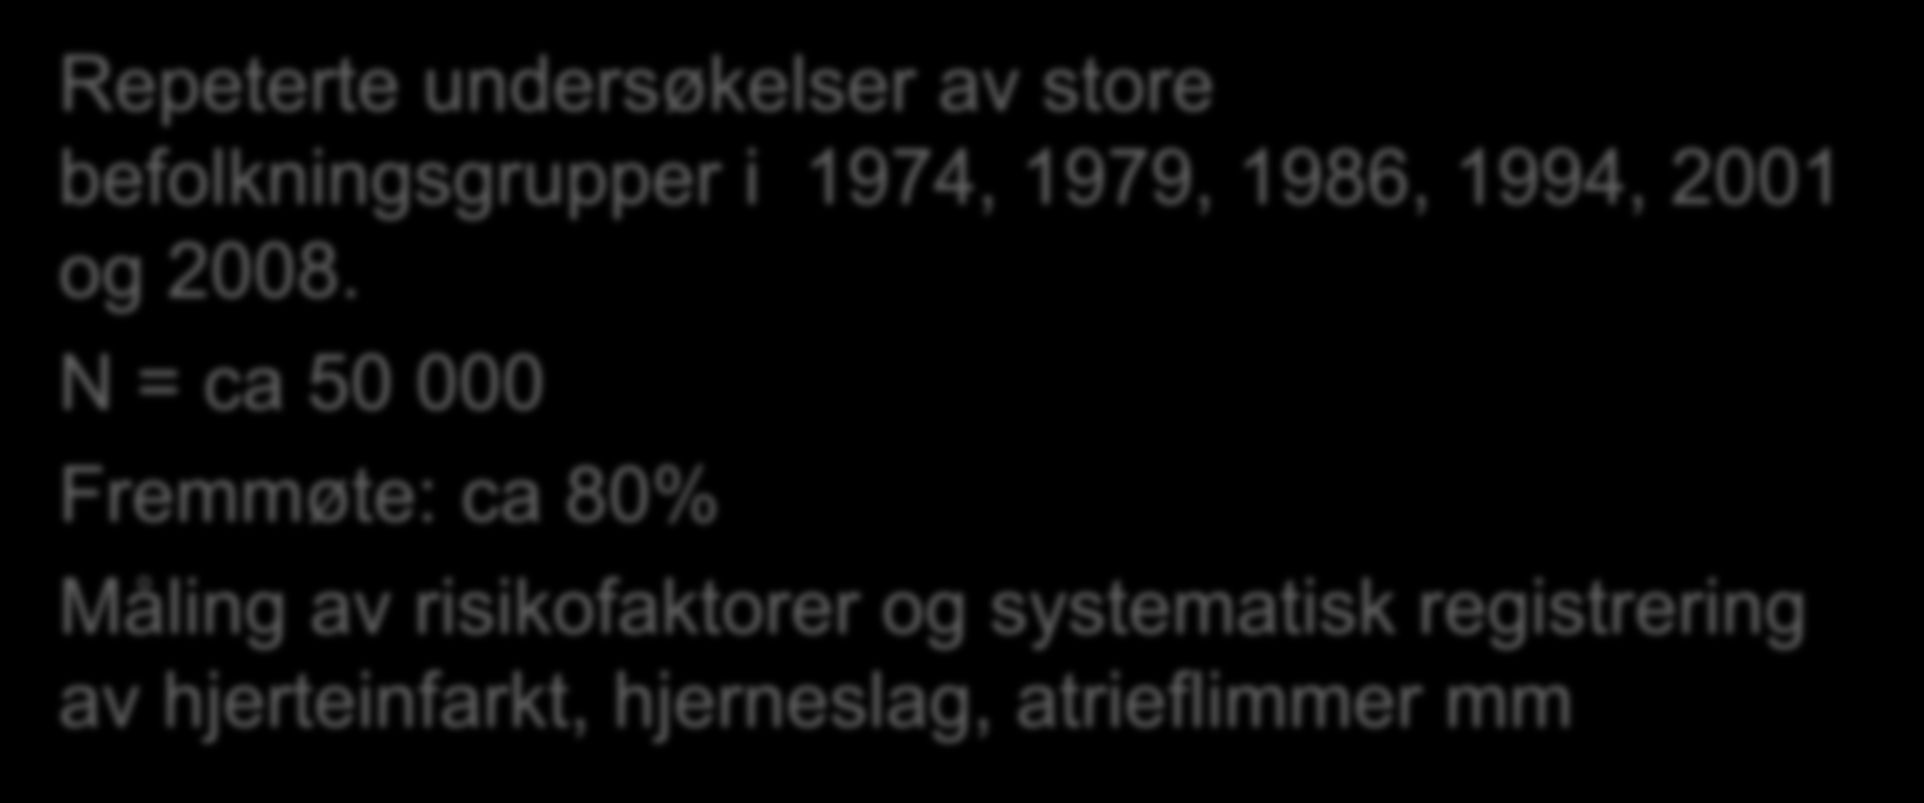 Tromsø-undersøkelsen Repeterte undersøkelser av store befolkningsgrupper i 1974, 1979, 1986, 1994, 2001 og 2008.